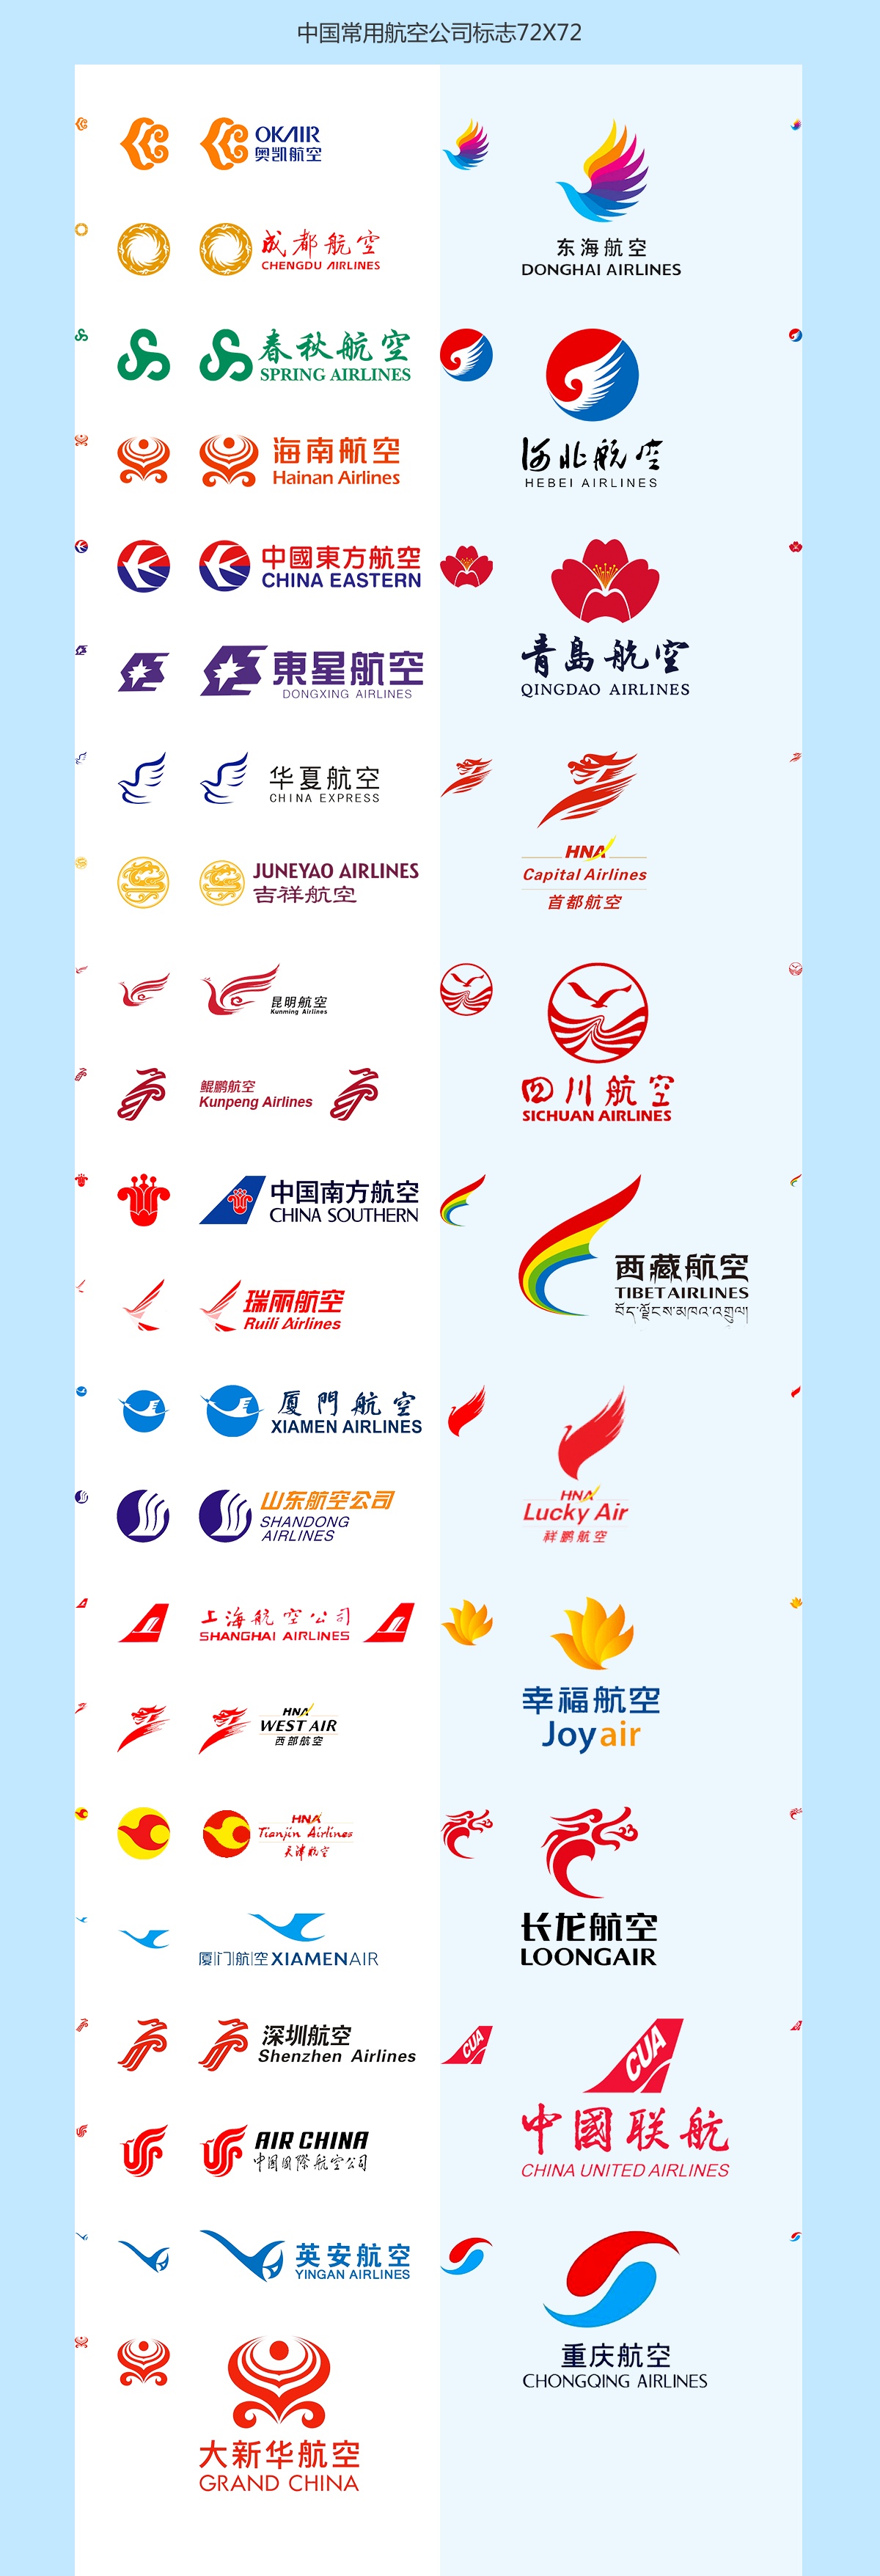 蒙古航空公司波音737 Max飞机复飞中国航线 - IT 与交通 - 航空 - cnBeta.COM